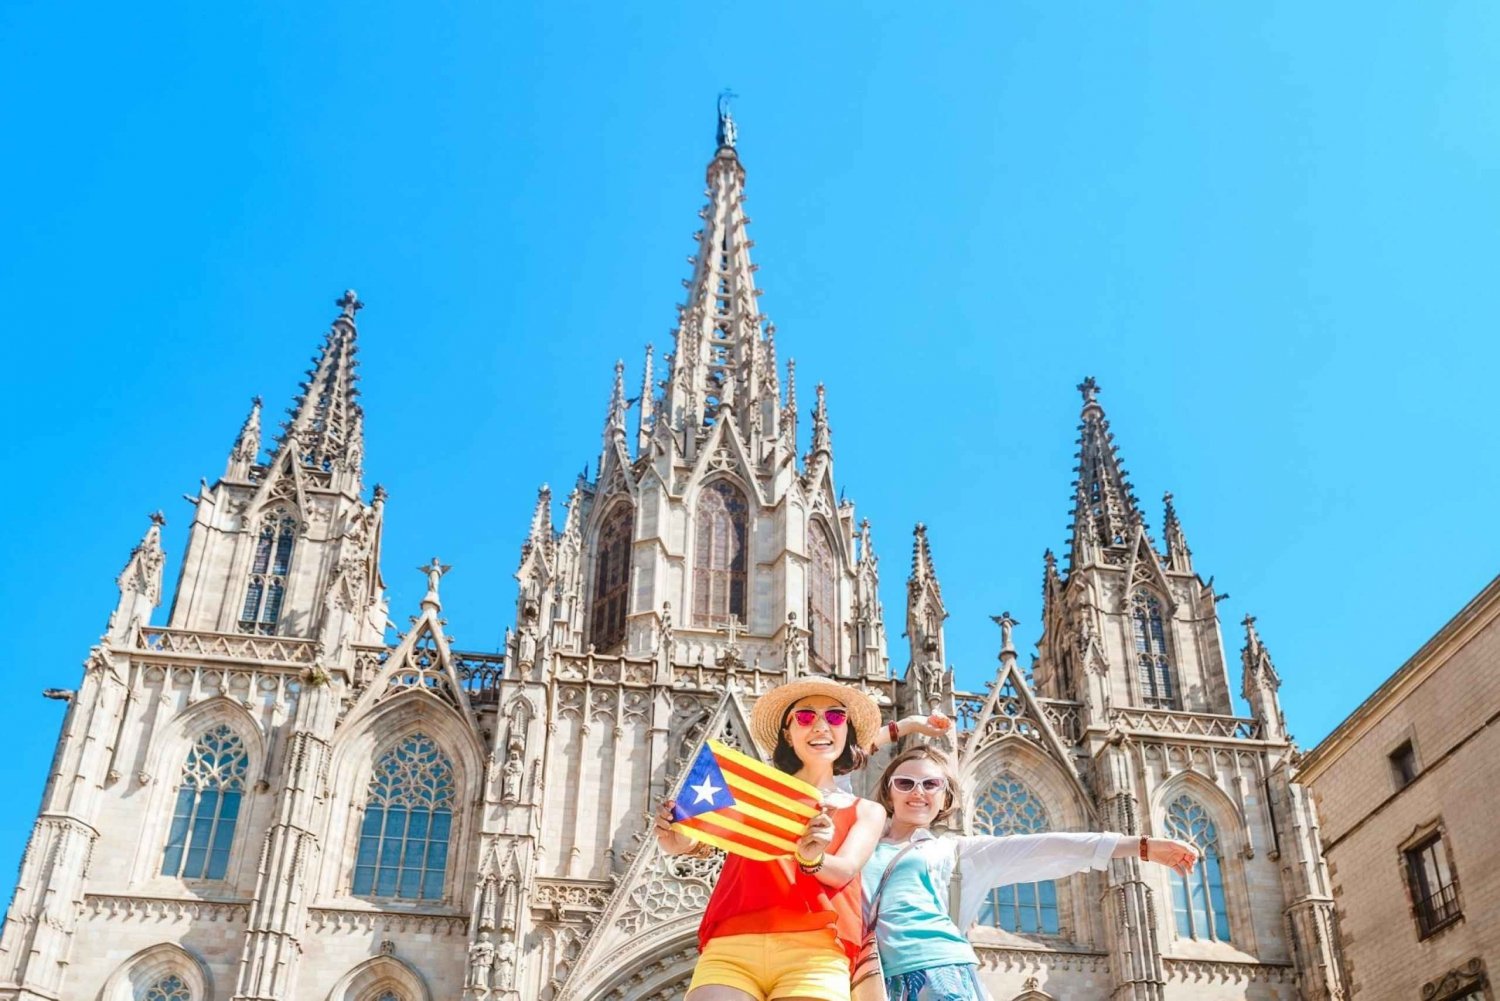 Katedra w Barcelonie, Dzielnica Gotycka, Stare Miasto - wycieczka piesza